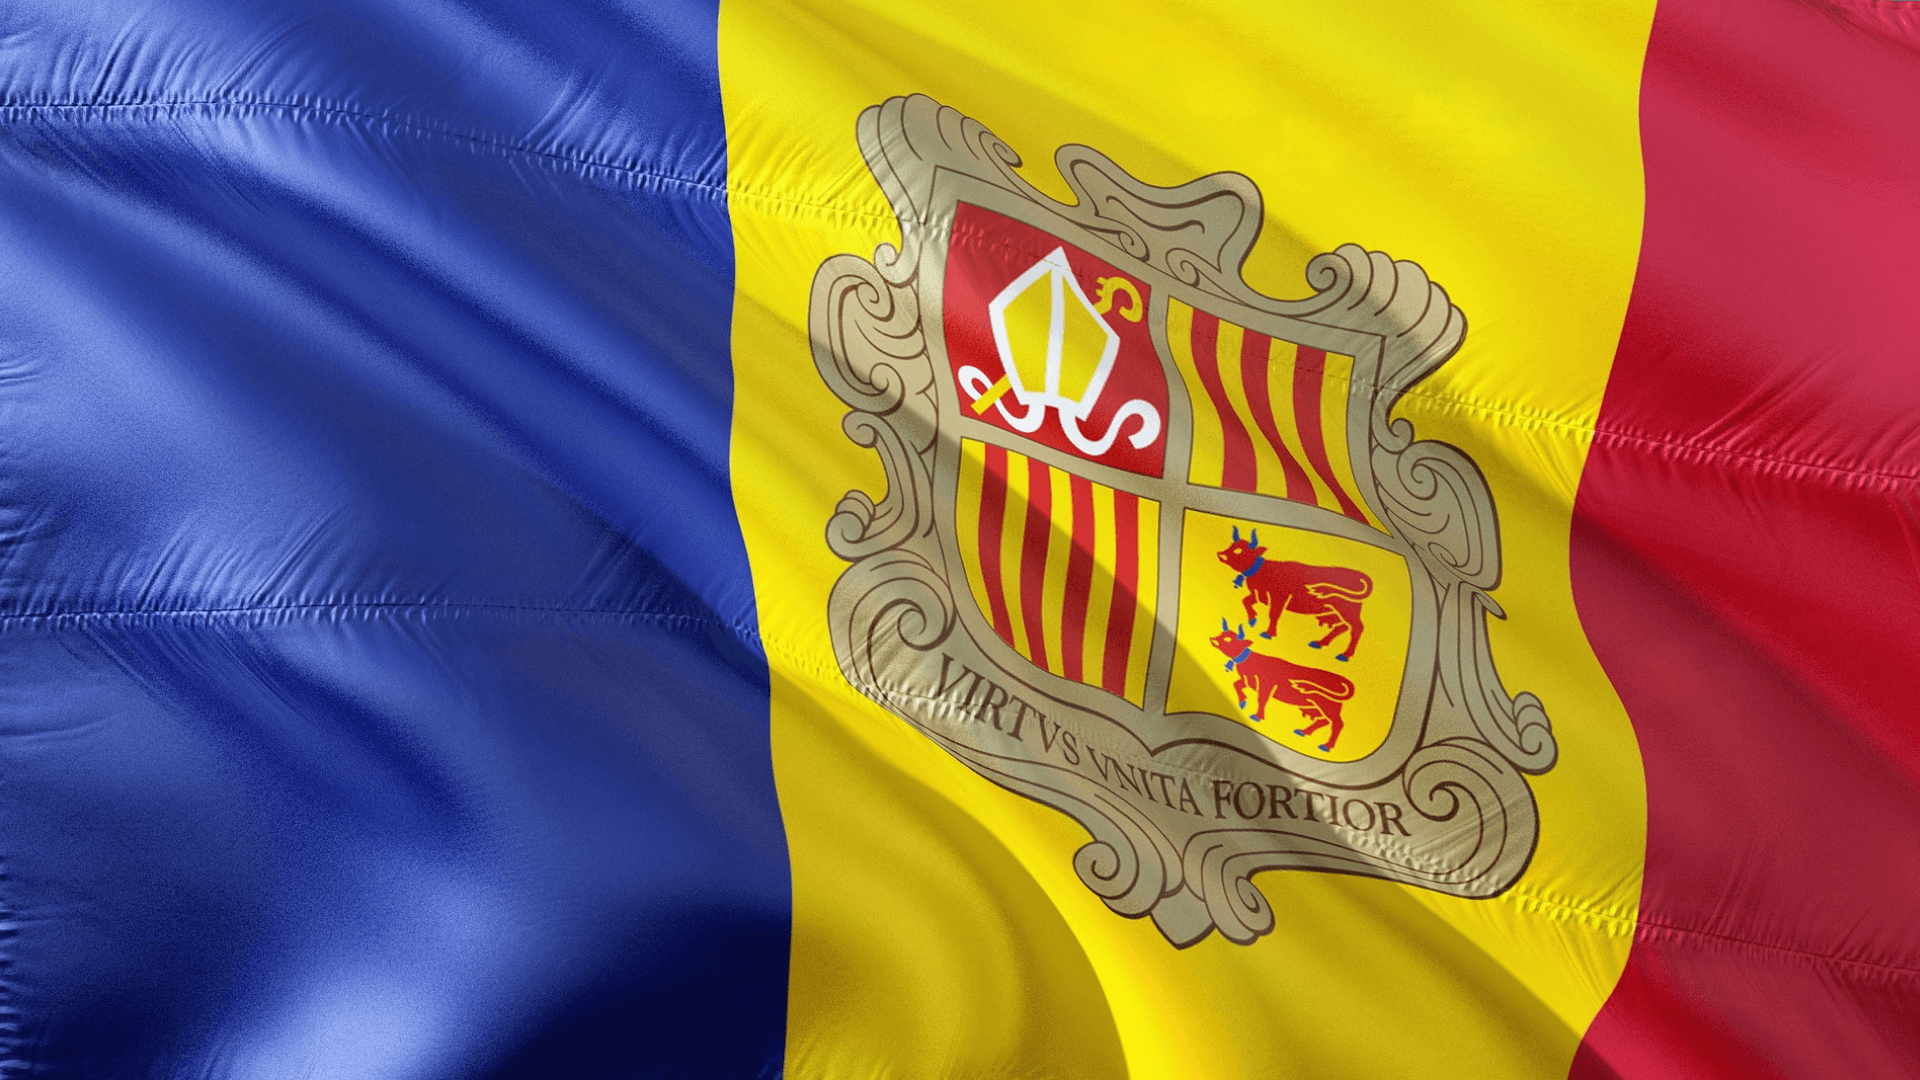 Cambio de residencia fiscal a Andorra: Cómo lo puedo hacer y que requisitos existen